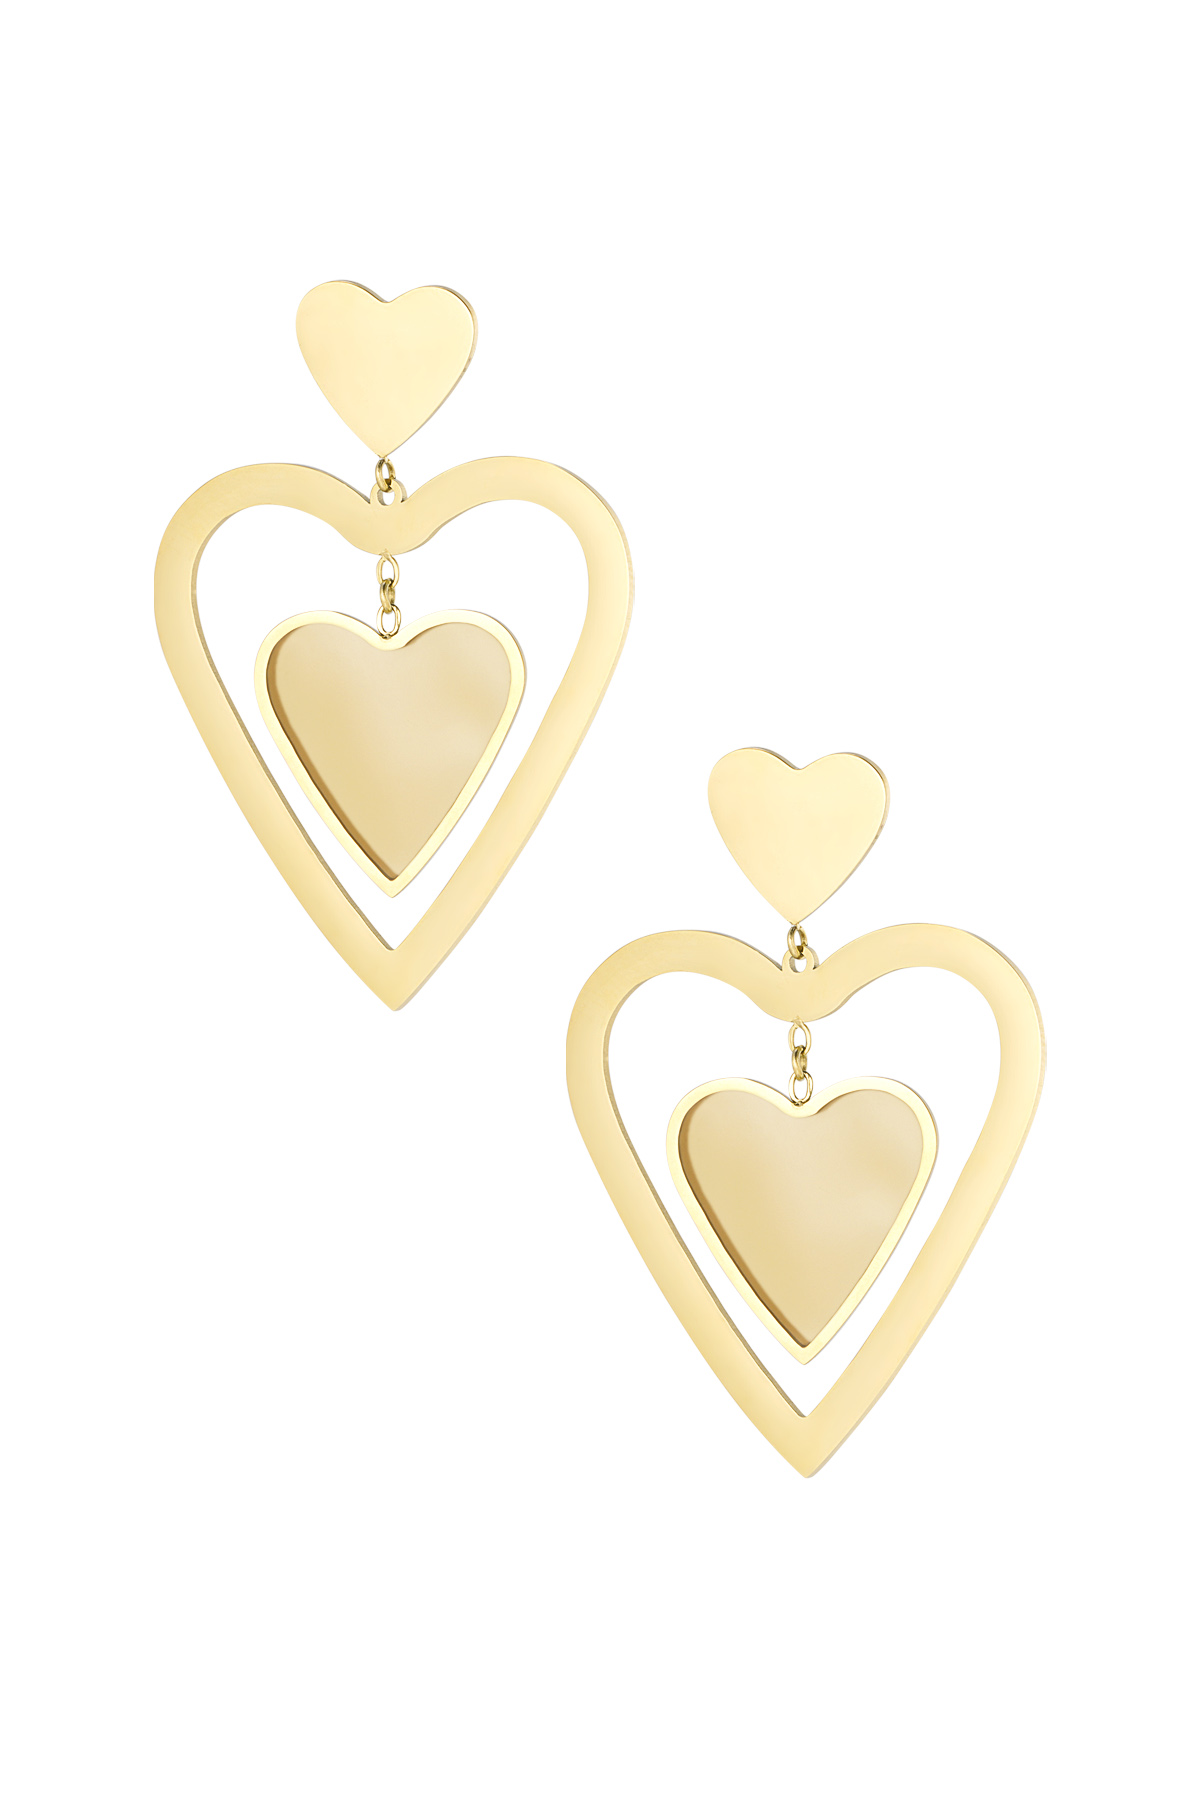 Double heart earrings - gold/beige